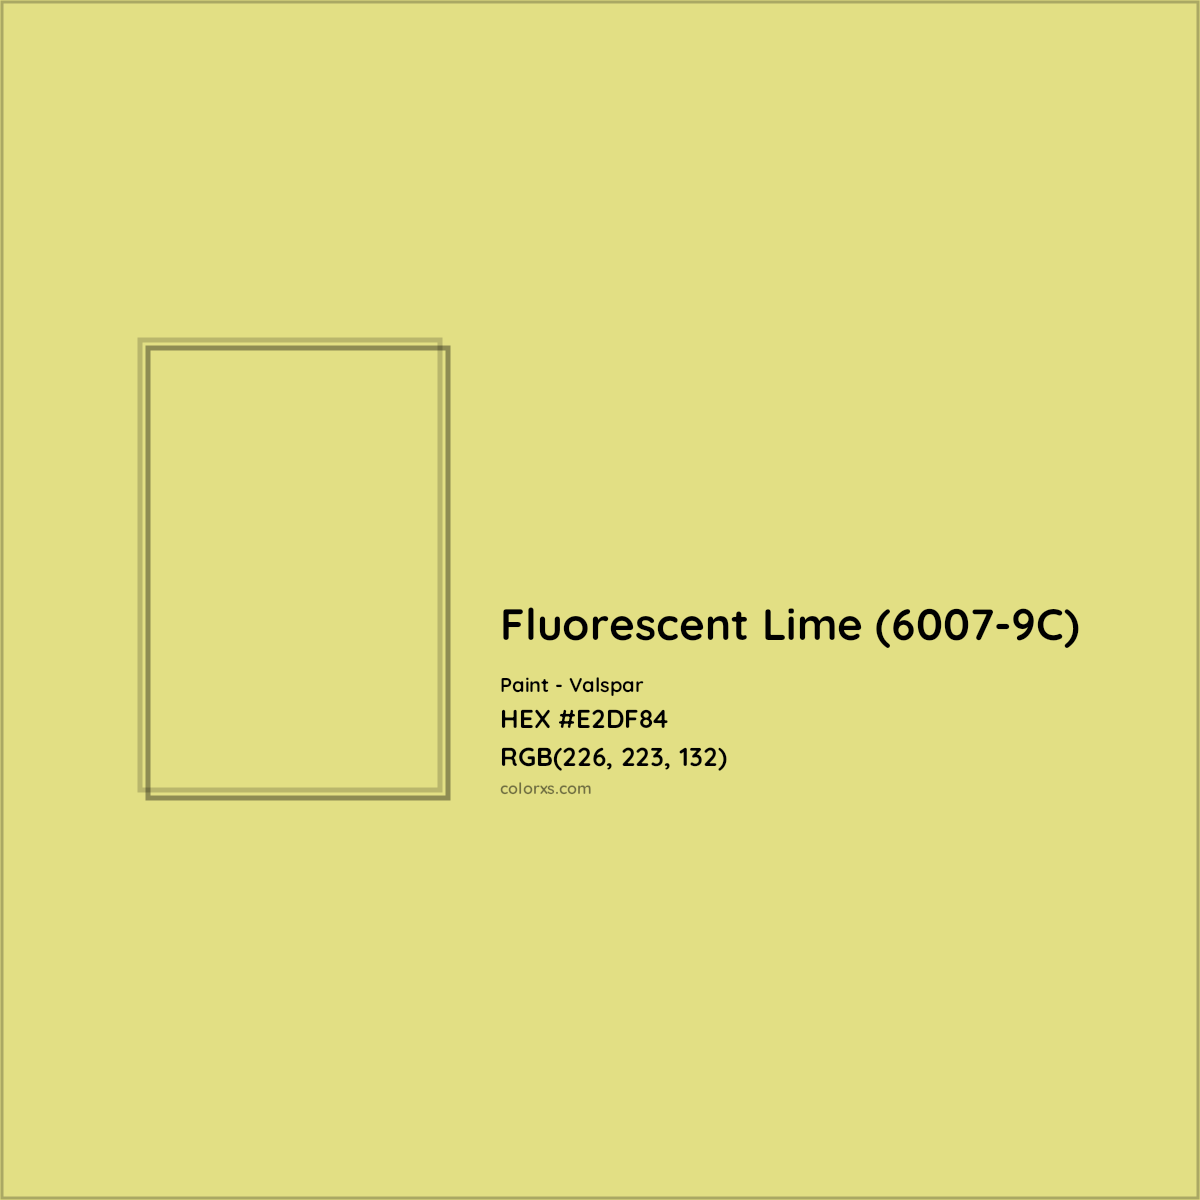 HEX #E2DF84 Fluorescent Lime (6007-9C) Paint Valspar - Color Code